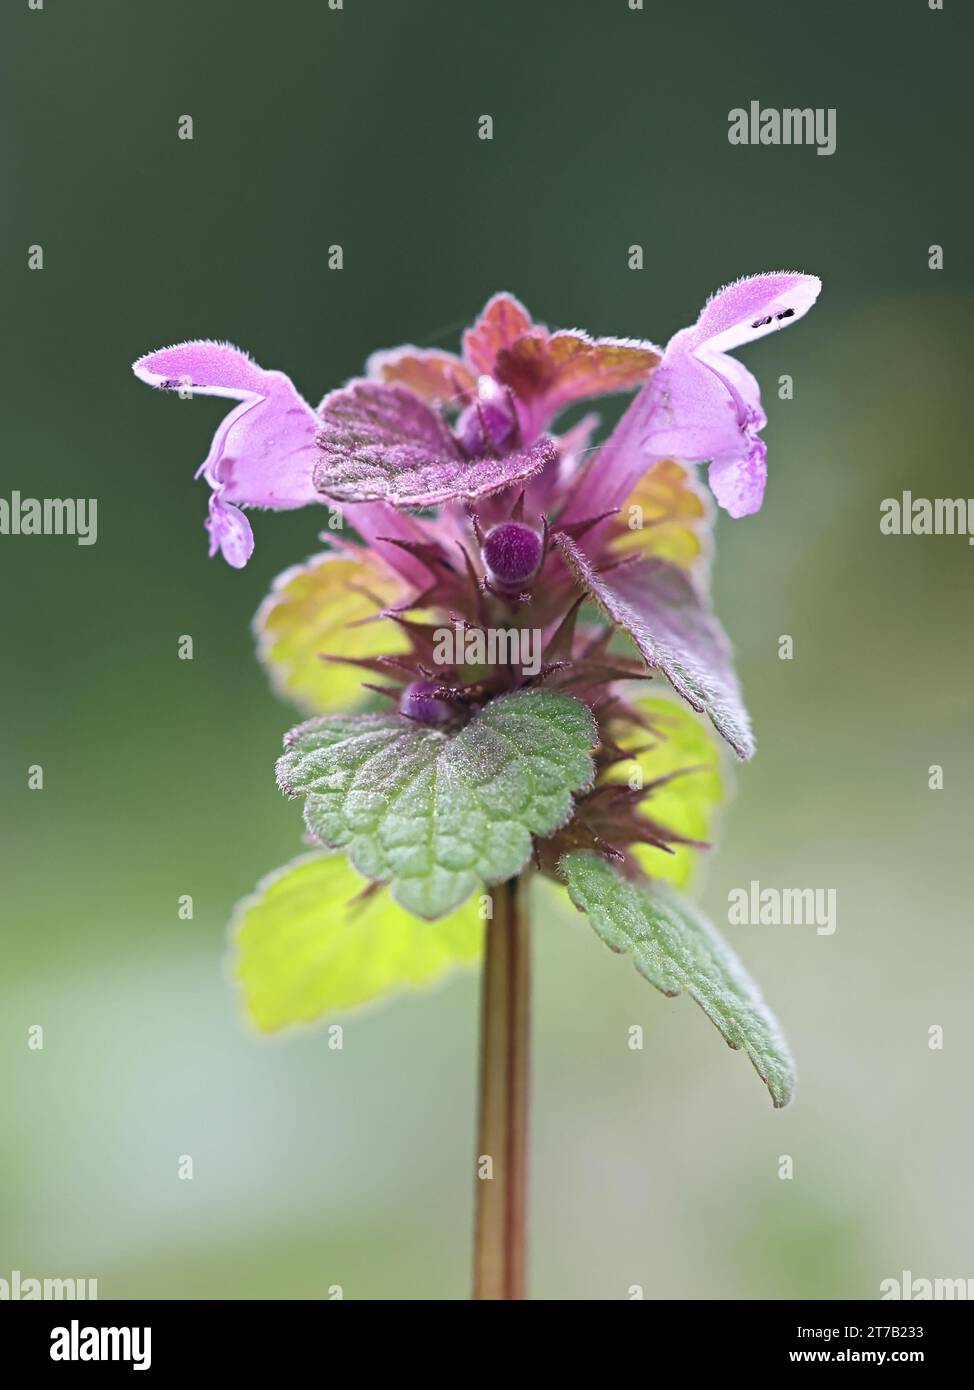 Lamium purpureum, connu sous le nom d'ortie morte rouge ou ortie morte pourpre, plante à fleurs sauvage de Finlande Banque D'Images